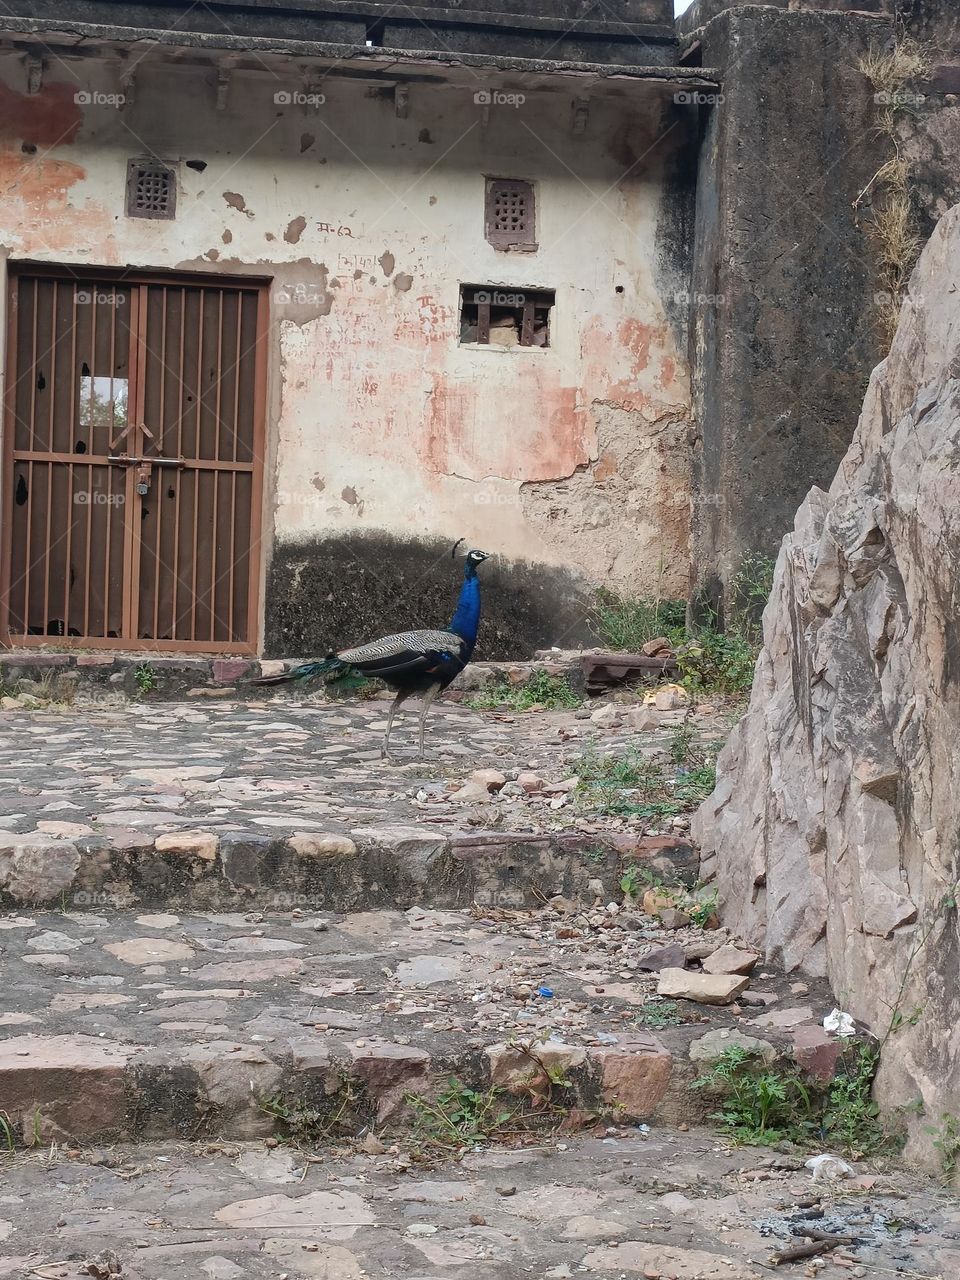 Indian national bird peacock